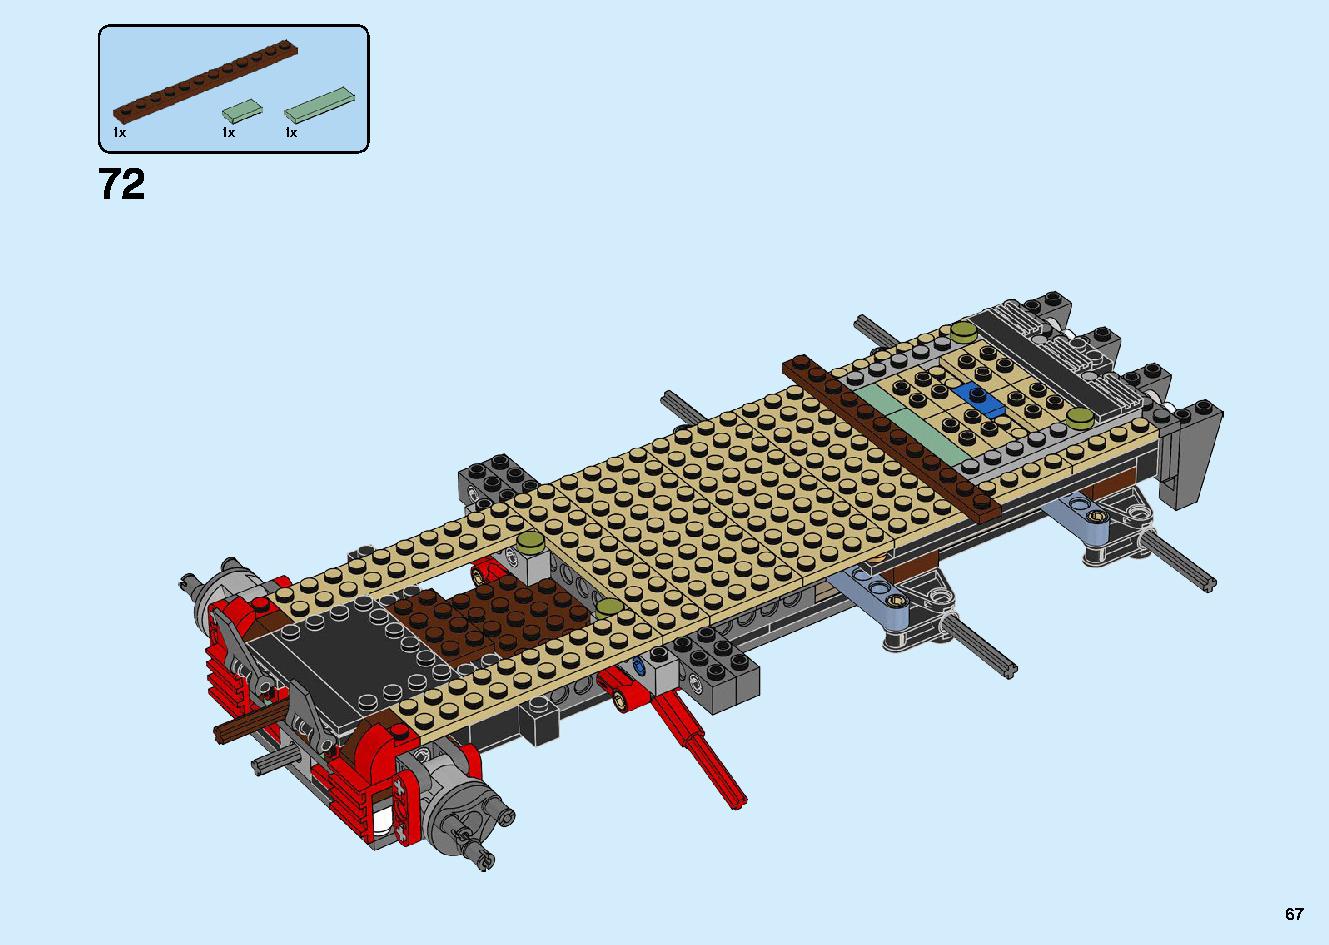 陸上戦艦バウンティ号 70677 レゴの商品情報 レゴの説明書・組立方法 67 page